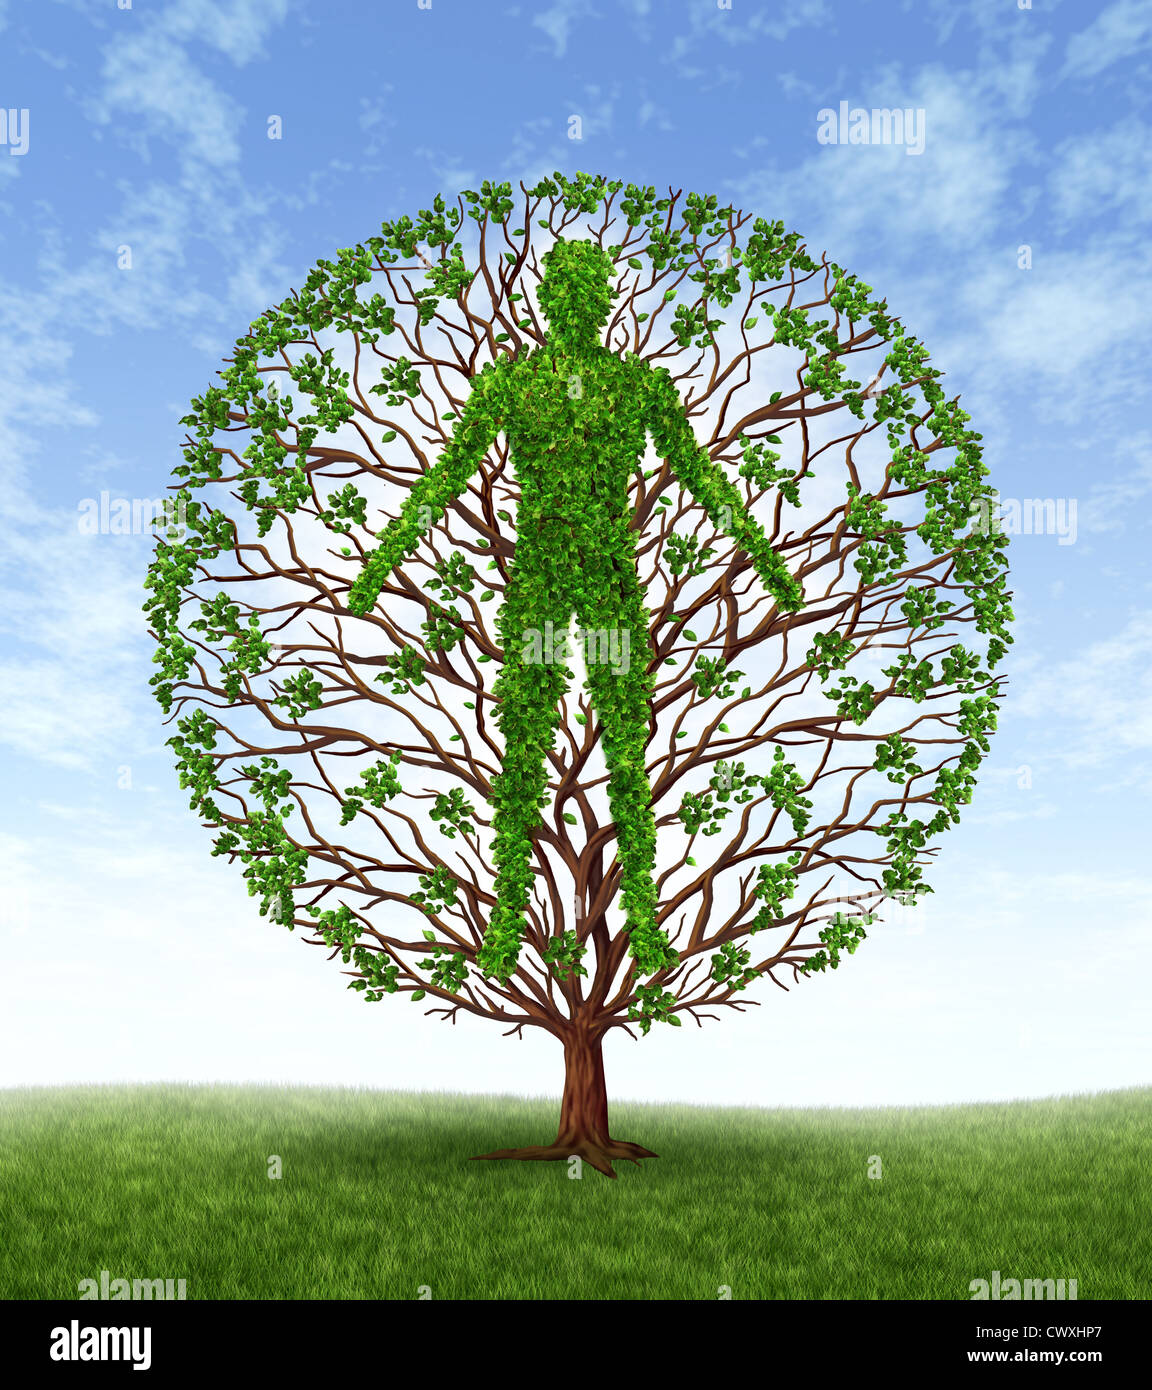 La croissance et le développement humain et le développement de la personnalité comme un symbole médical de la santé comme un arbre avec des branches et feuilles vertes Banque D'Images